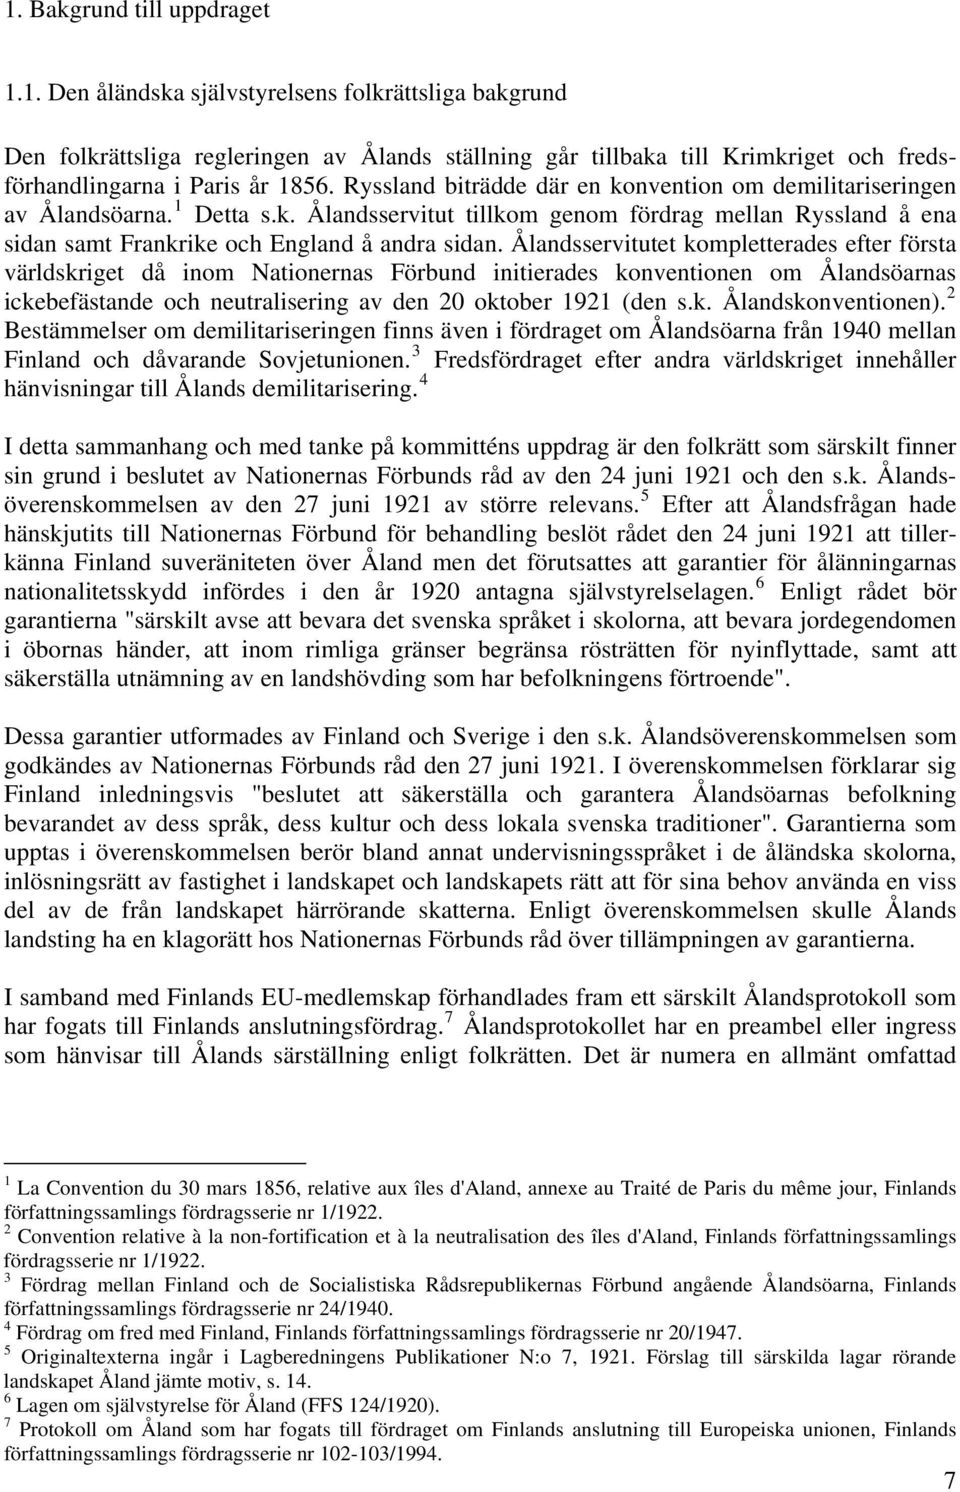 Ålandsservitutet kompletterades efter första världskriget då inom Nationernas Förbund initierades konventionen om Ålandsöarnas ickebefästande och neutralisering av den 20 oktober 1921 (den s.k. Ålandskonventionen).